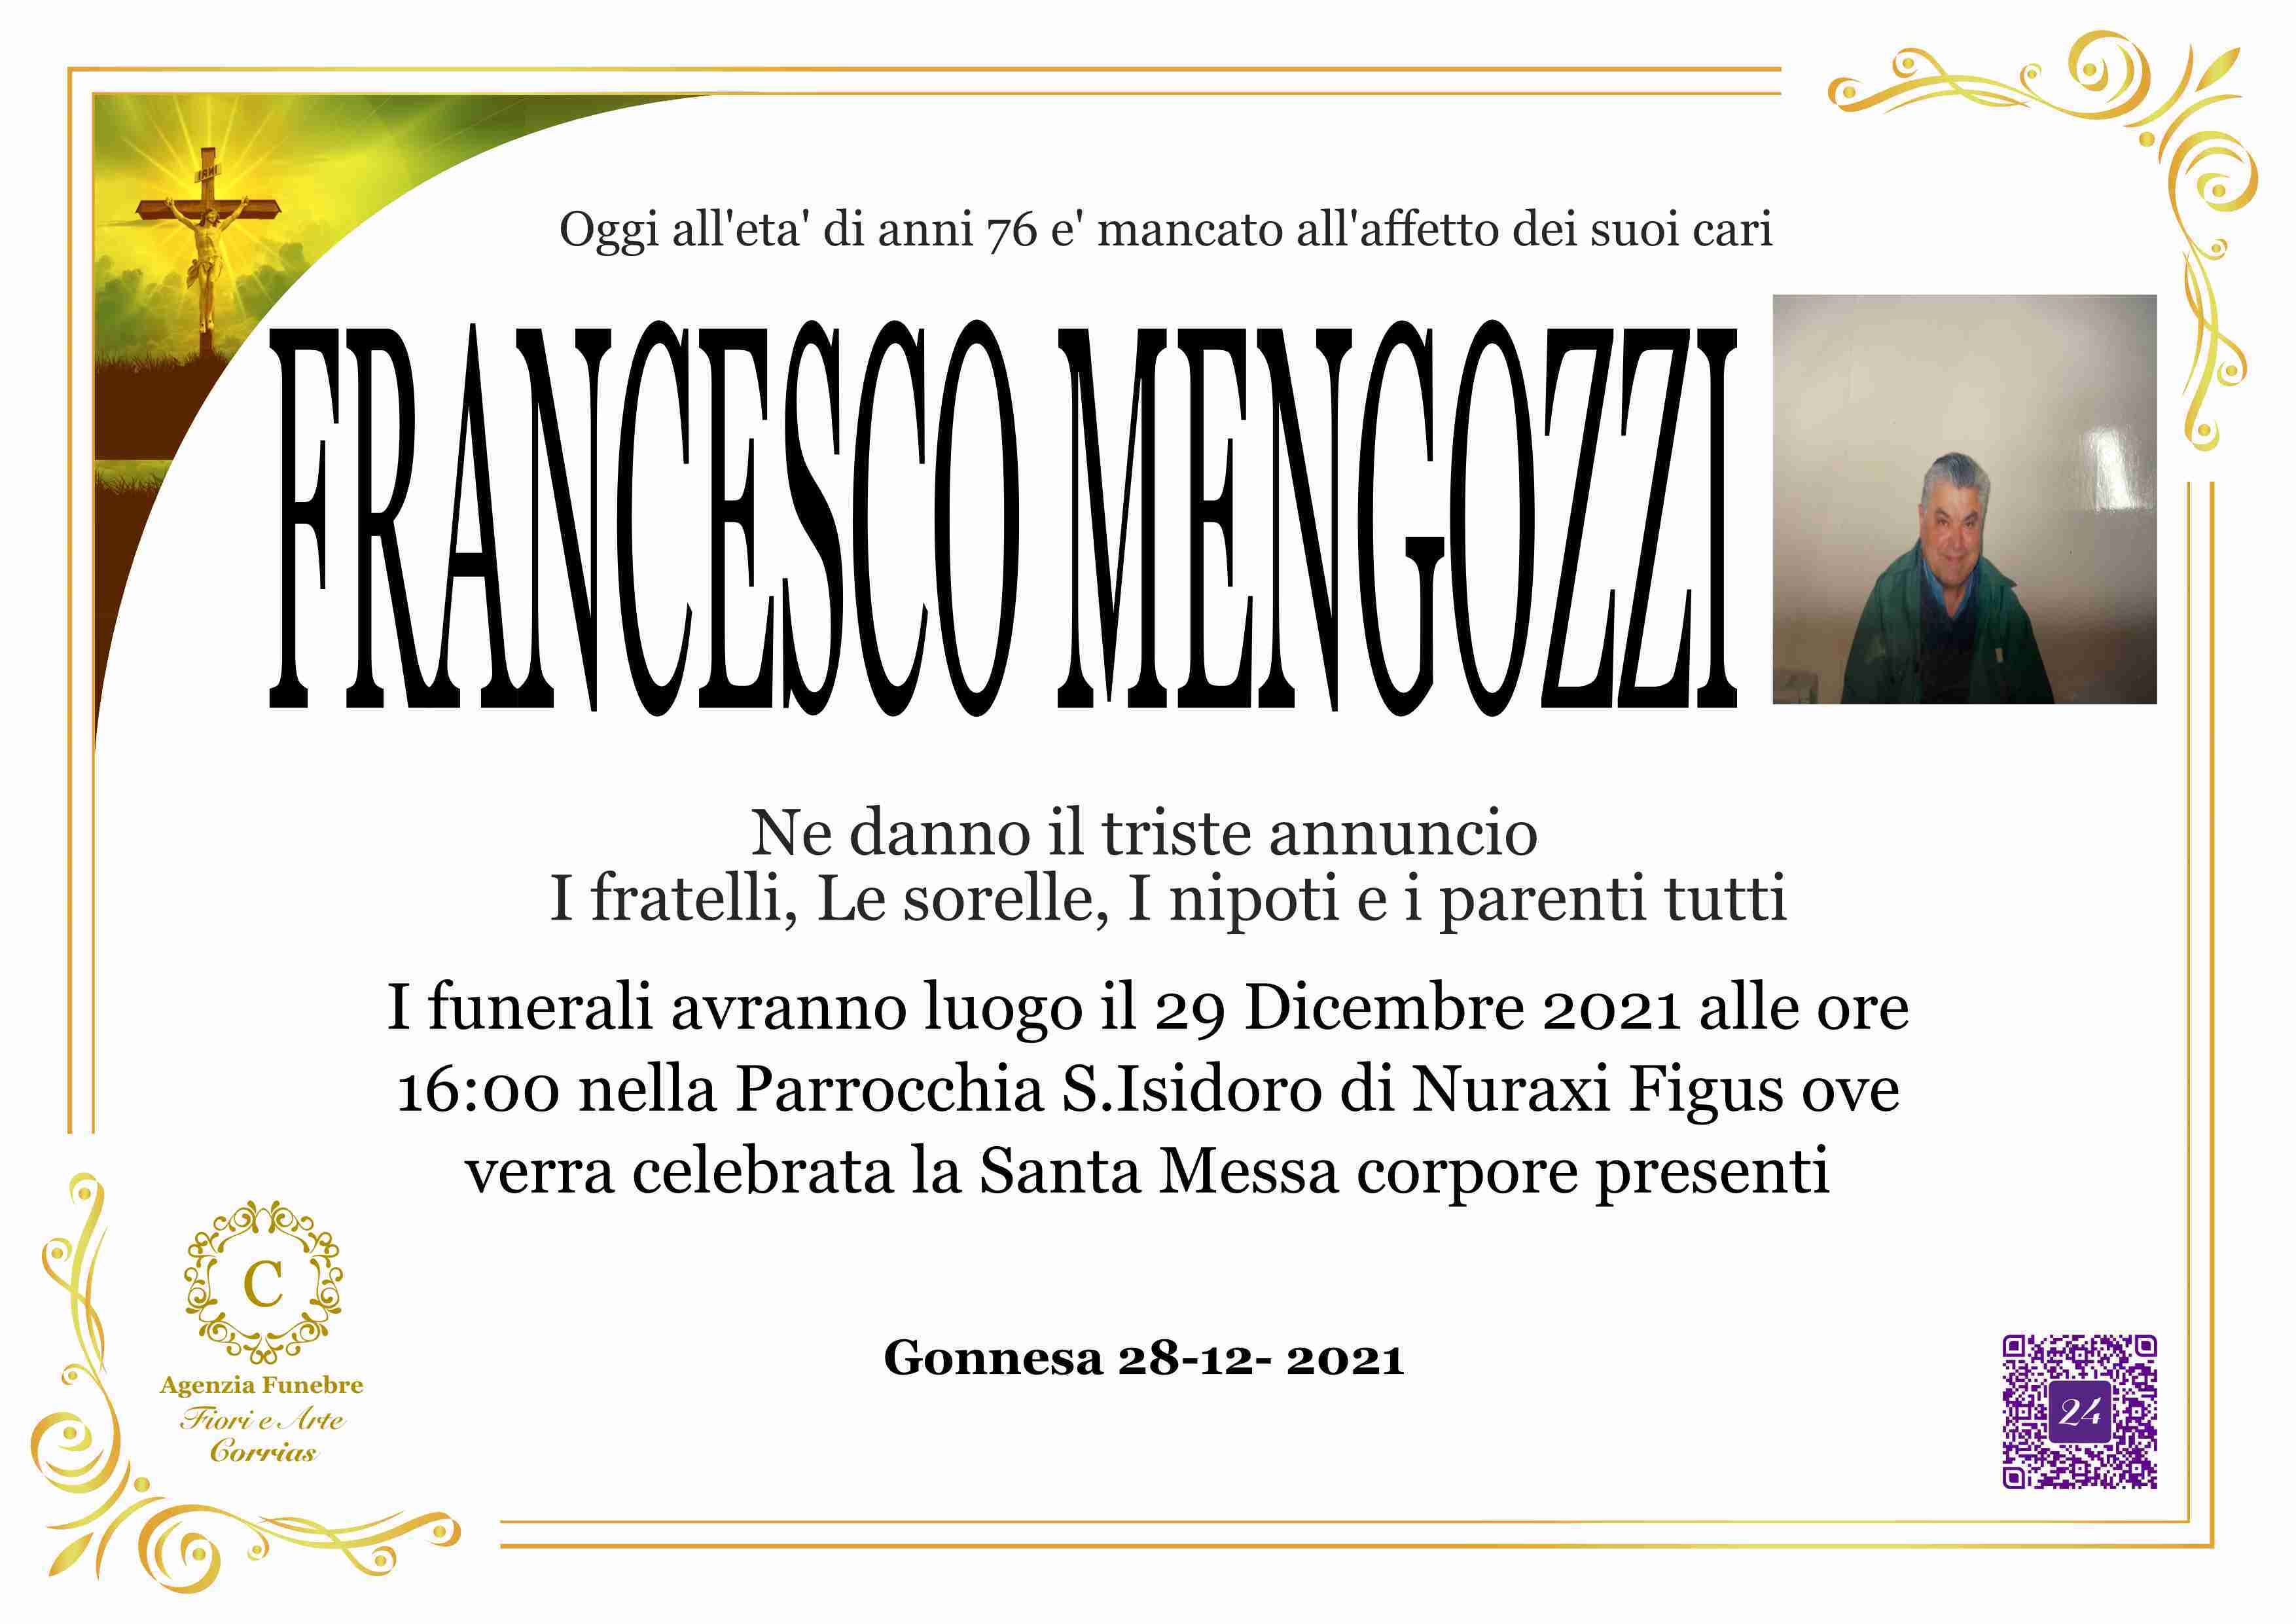 Francesco Mengozzi